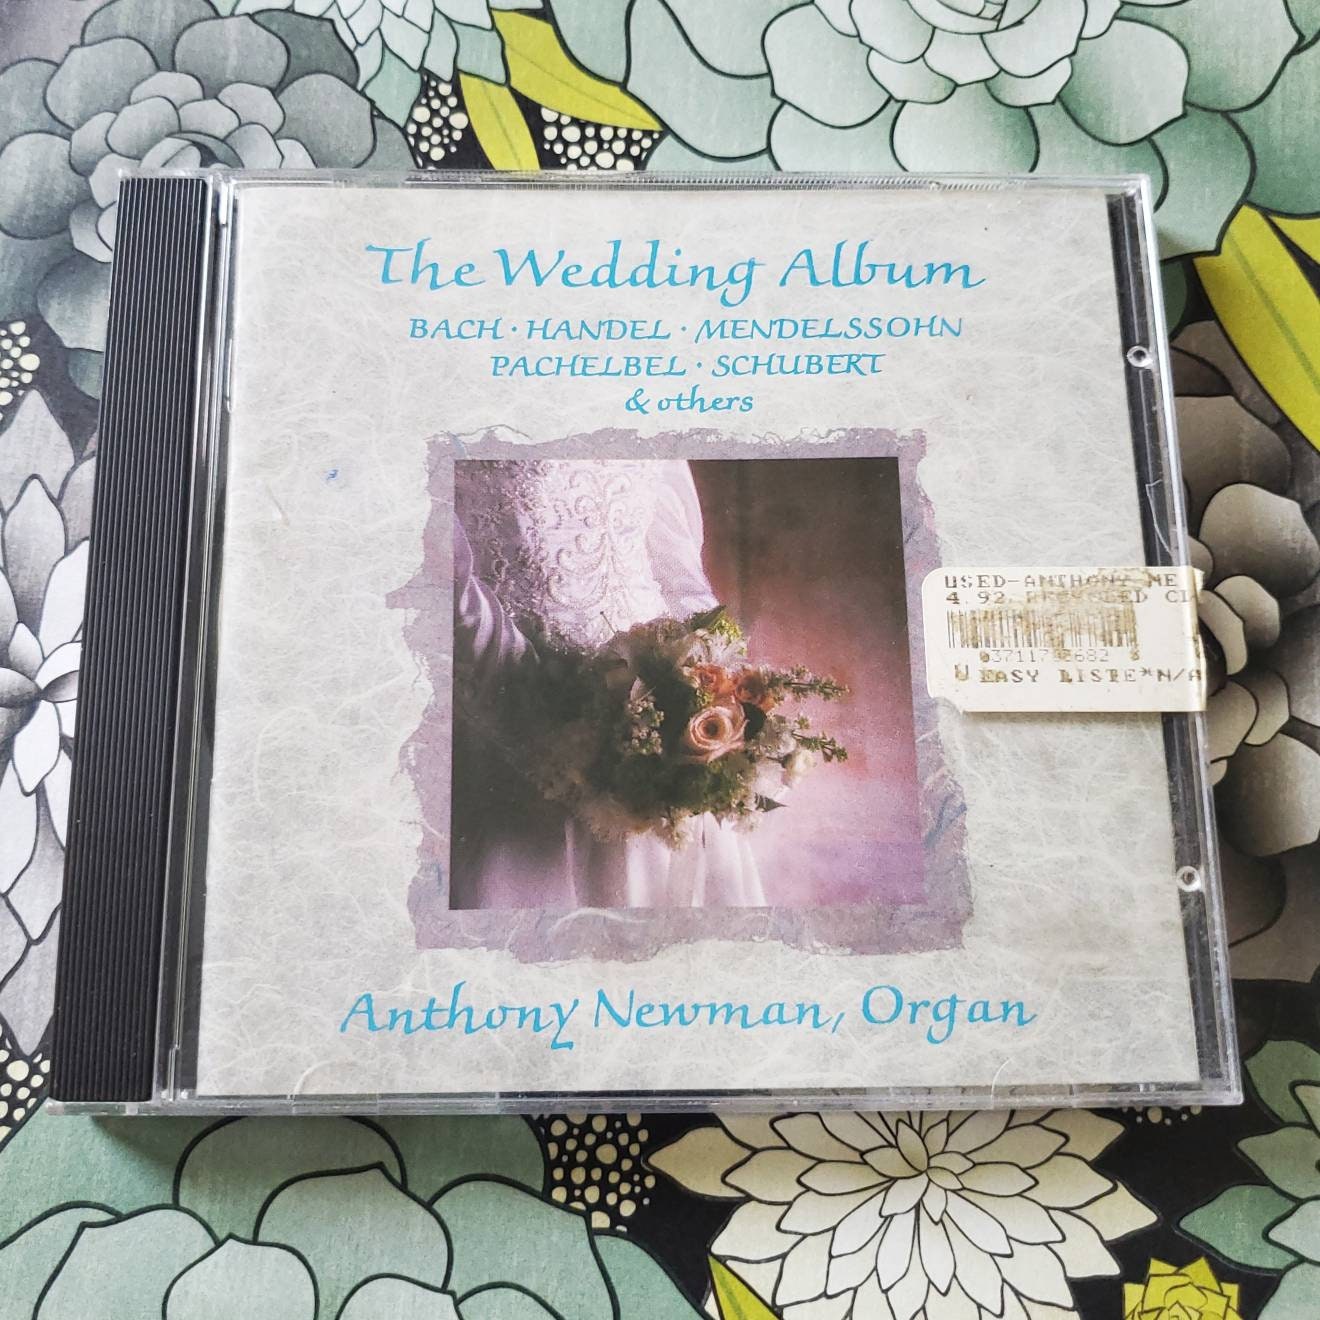 The Wedding Album